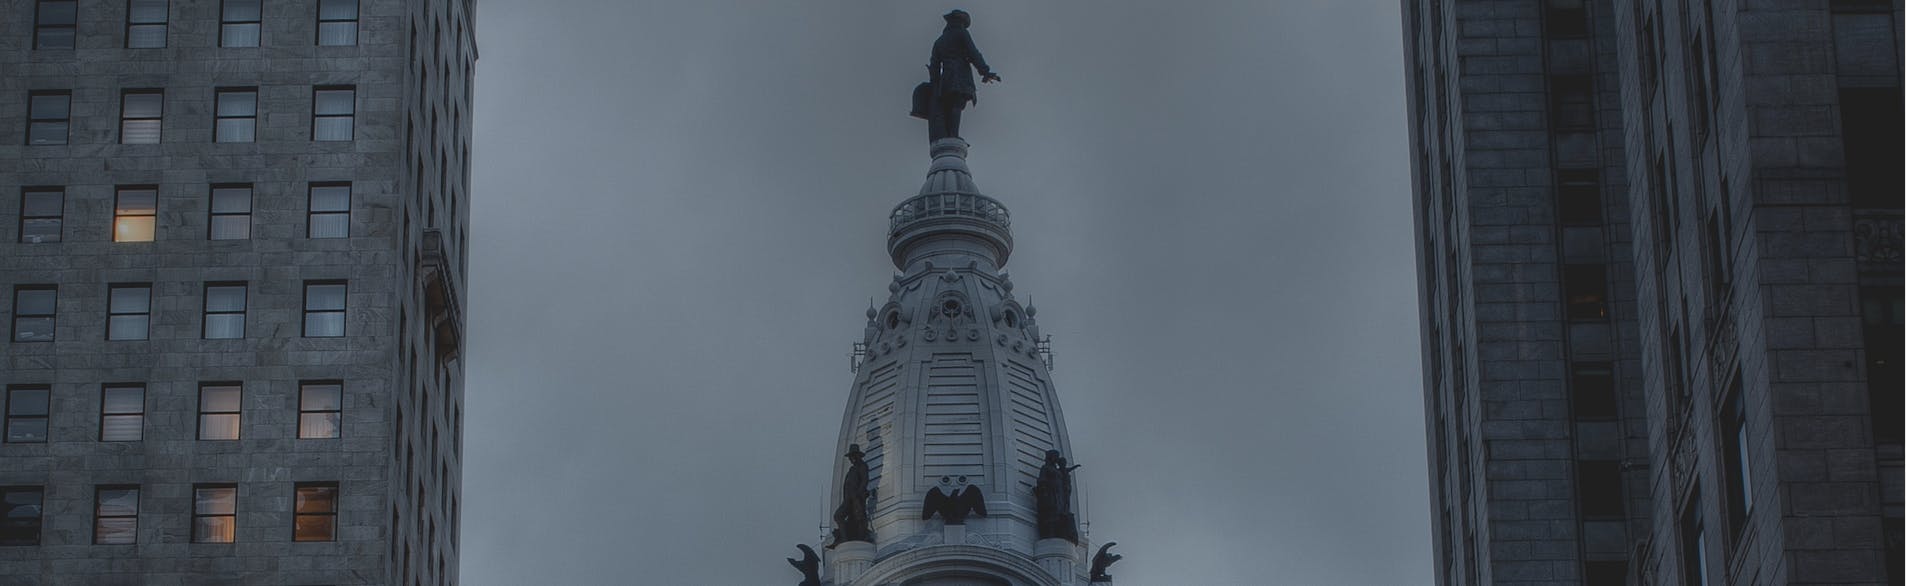 The top of Philadelphia City Hall